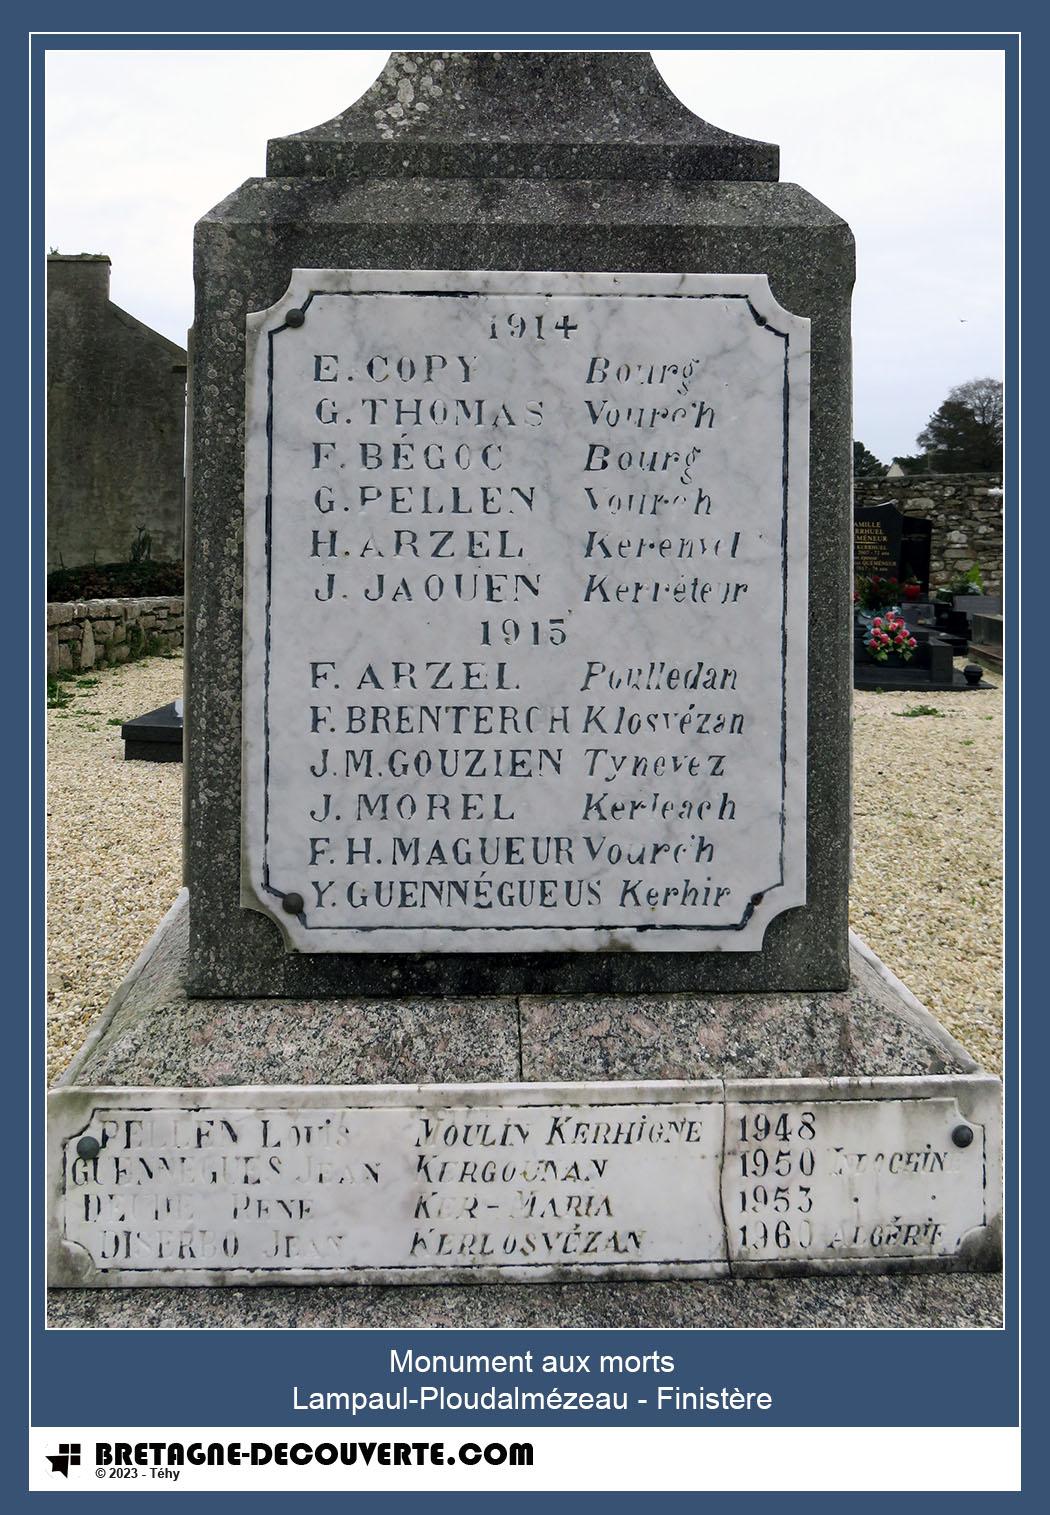 Les noms gravés sur le monument aux morts de Lampaul-Ploudalmézeau